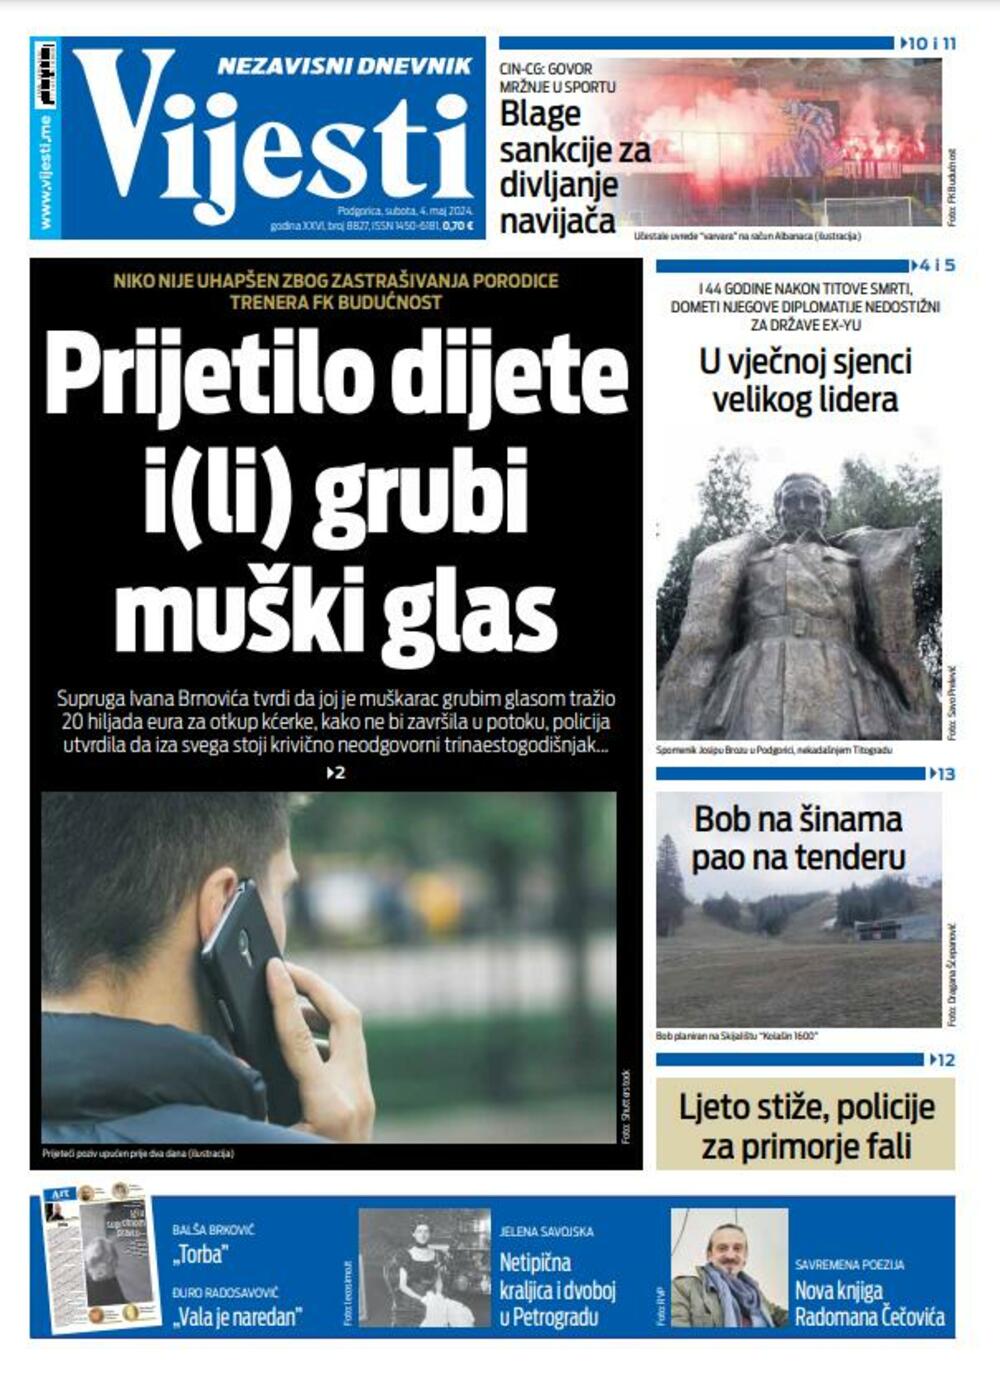 Naslovna strana "Vijesti" za 4. maj 2024., Foto: Vijesti